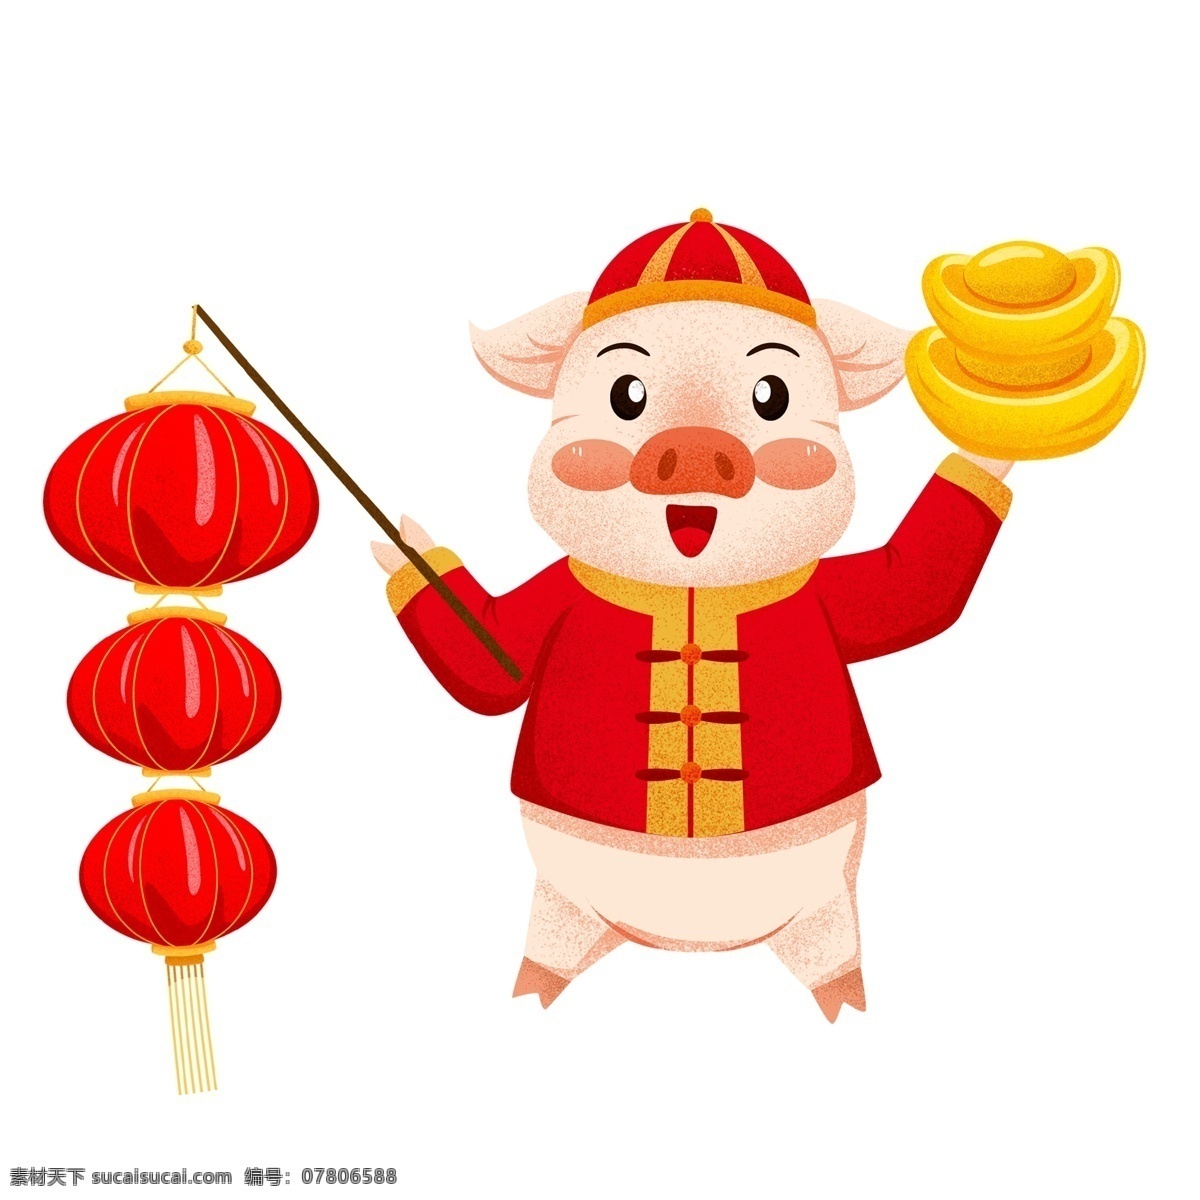 喜庆 提 红灯笼 金元宝 的卡 通 猪 卡通 灯笼 春节 插画 新年 猪年 2019年 过年 小猪形象 猪年形象 大年初二 财神猪 财神到